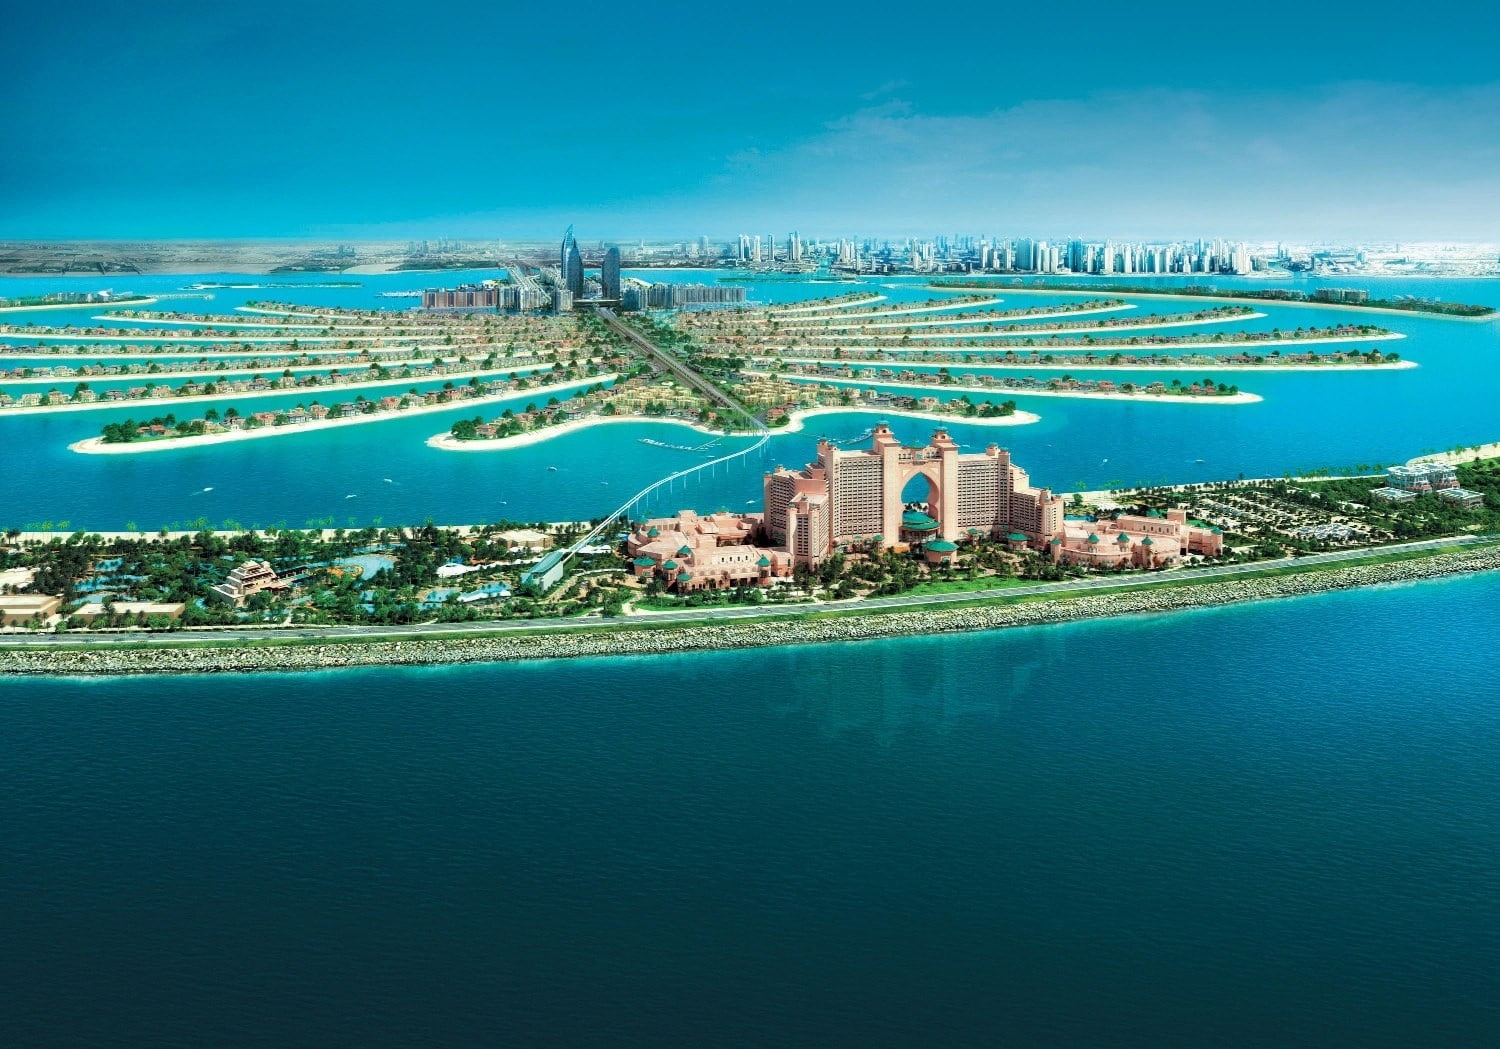 Dubai, landscape, photography, cityscape, modern, urban, skyscraper, United Arab Emirates